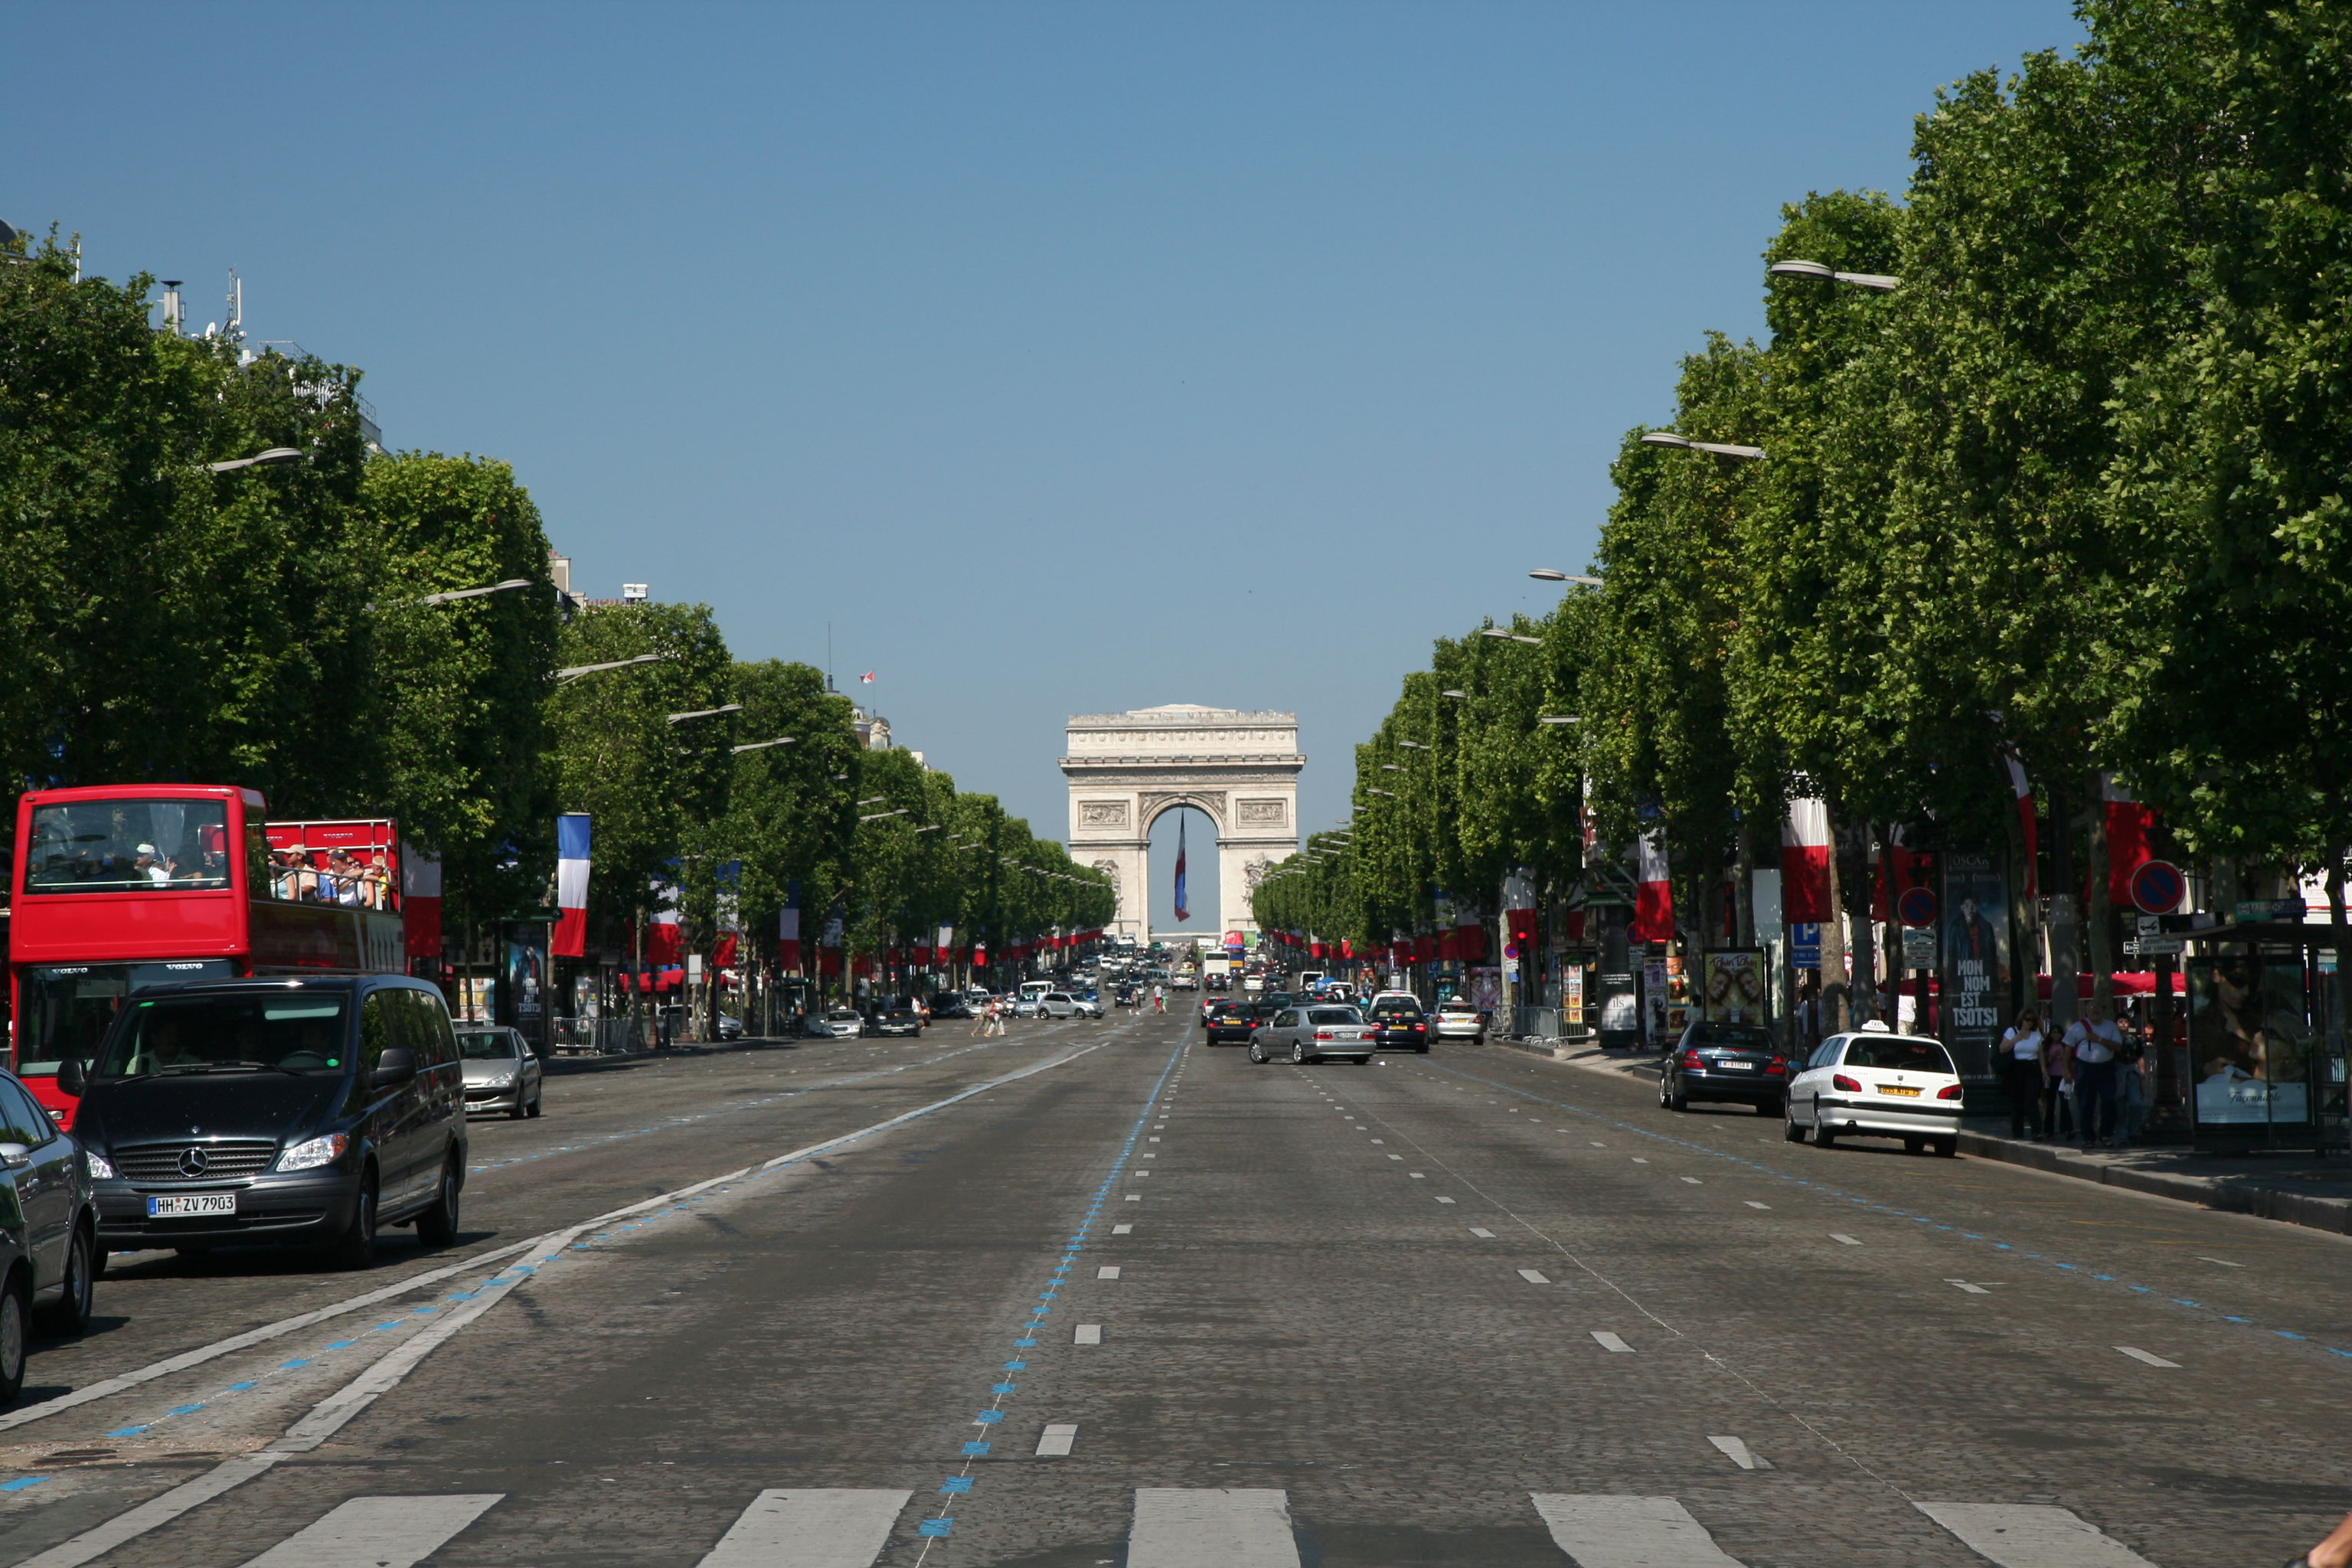 Champs-Élysées Avenue